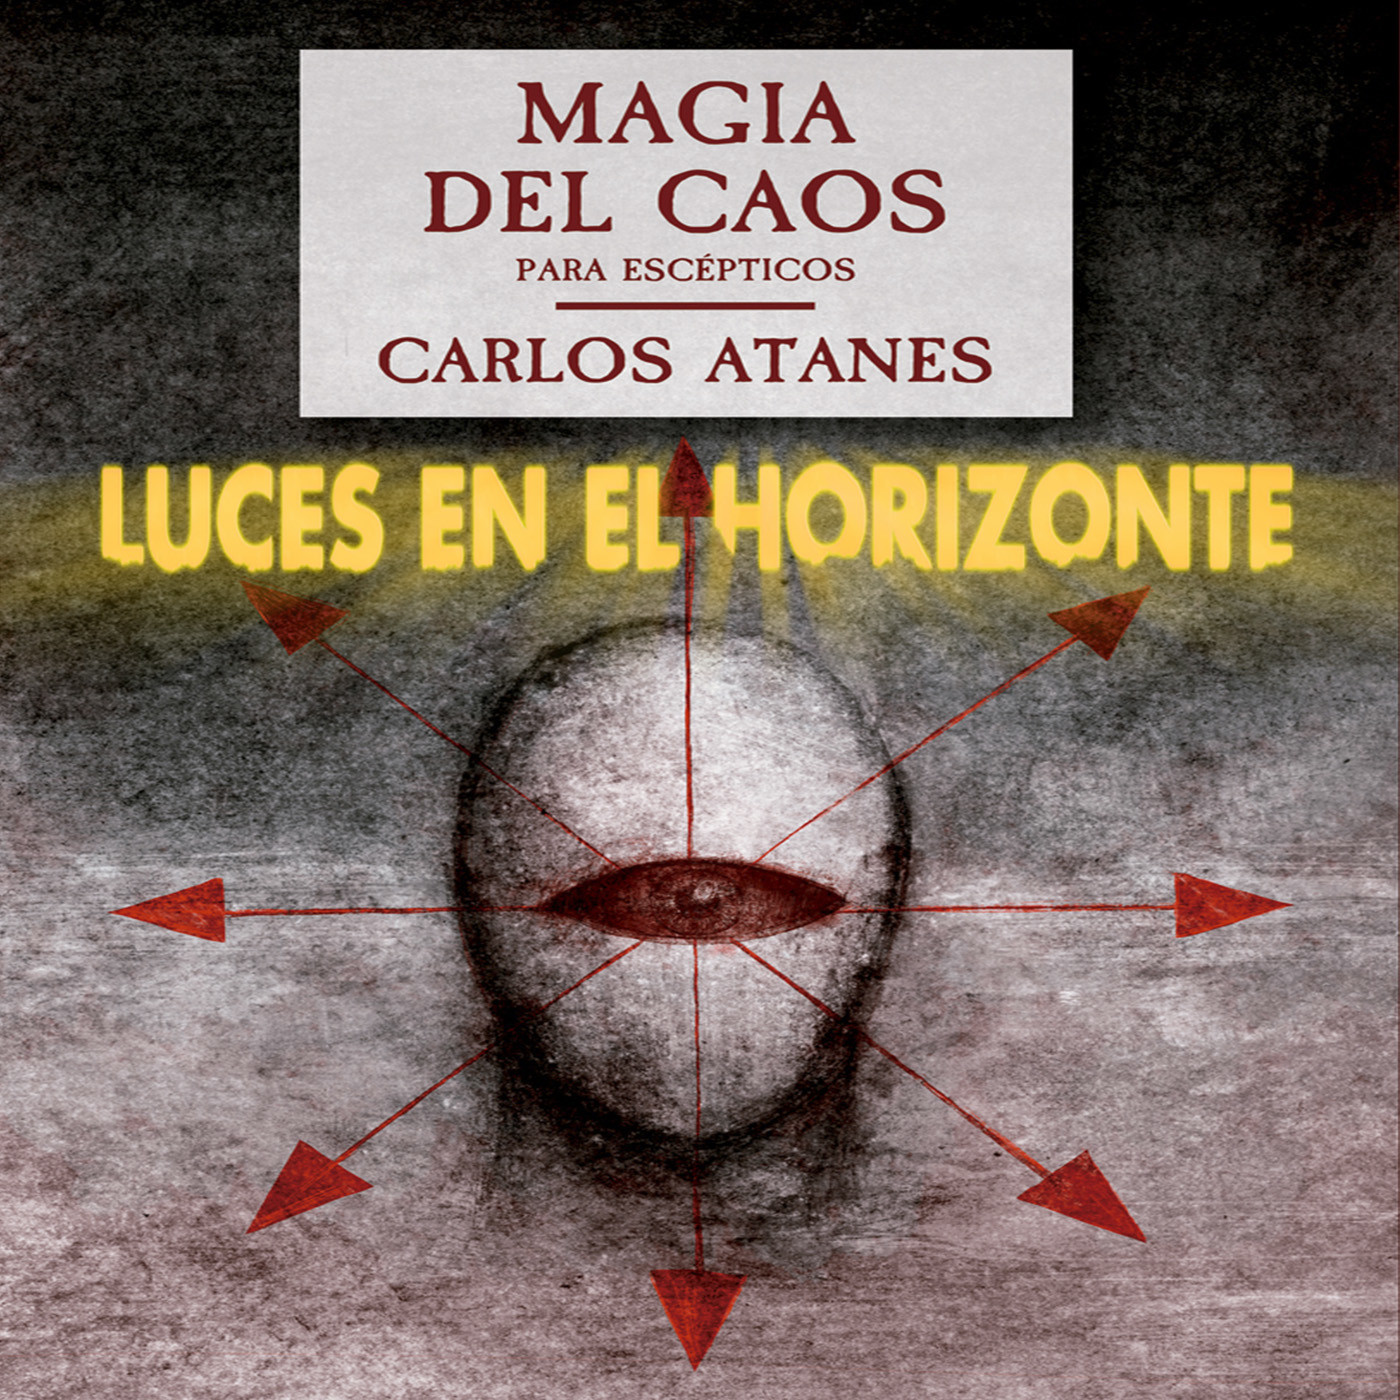 Luces en el Horizonte: MAGIA DEL CAOS PARA ESCÉPTICOS Con Carlos Atanes